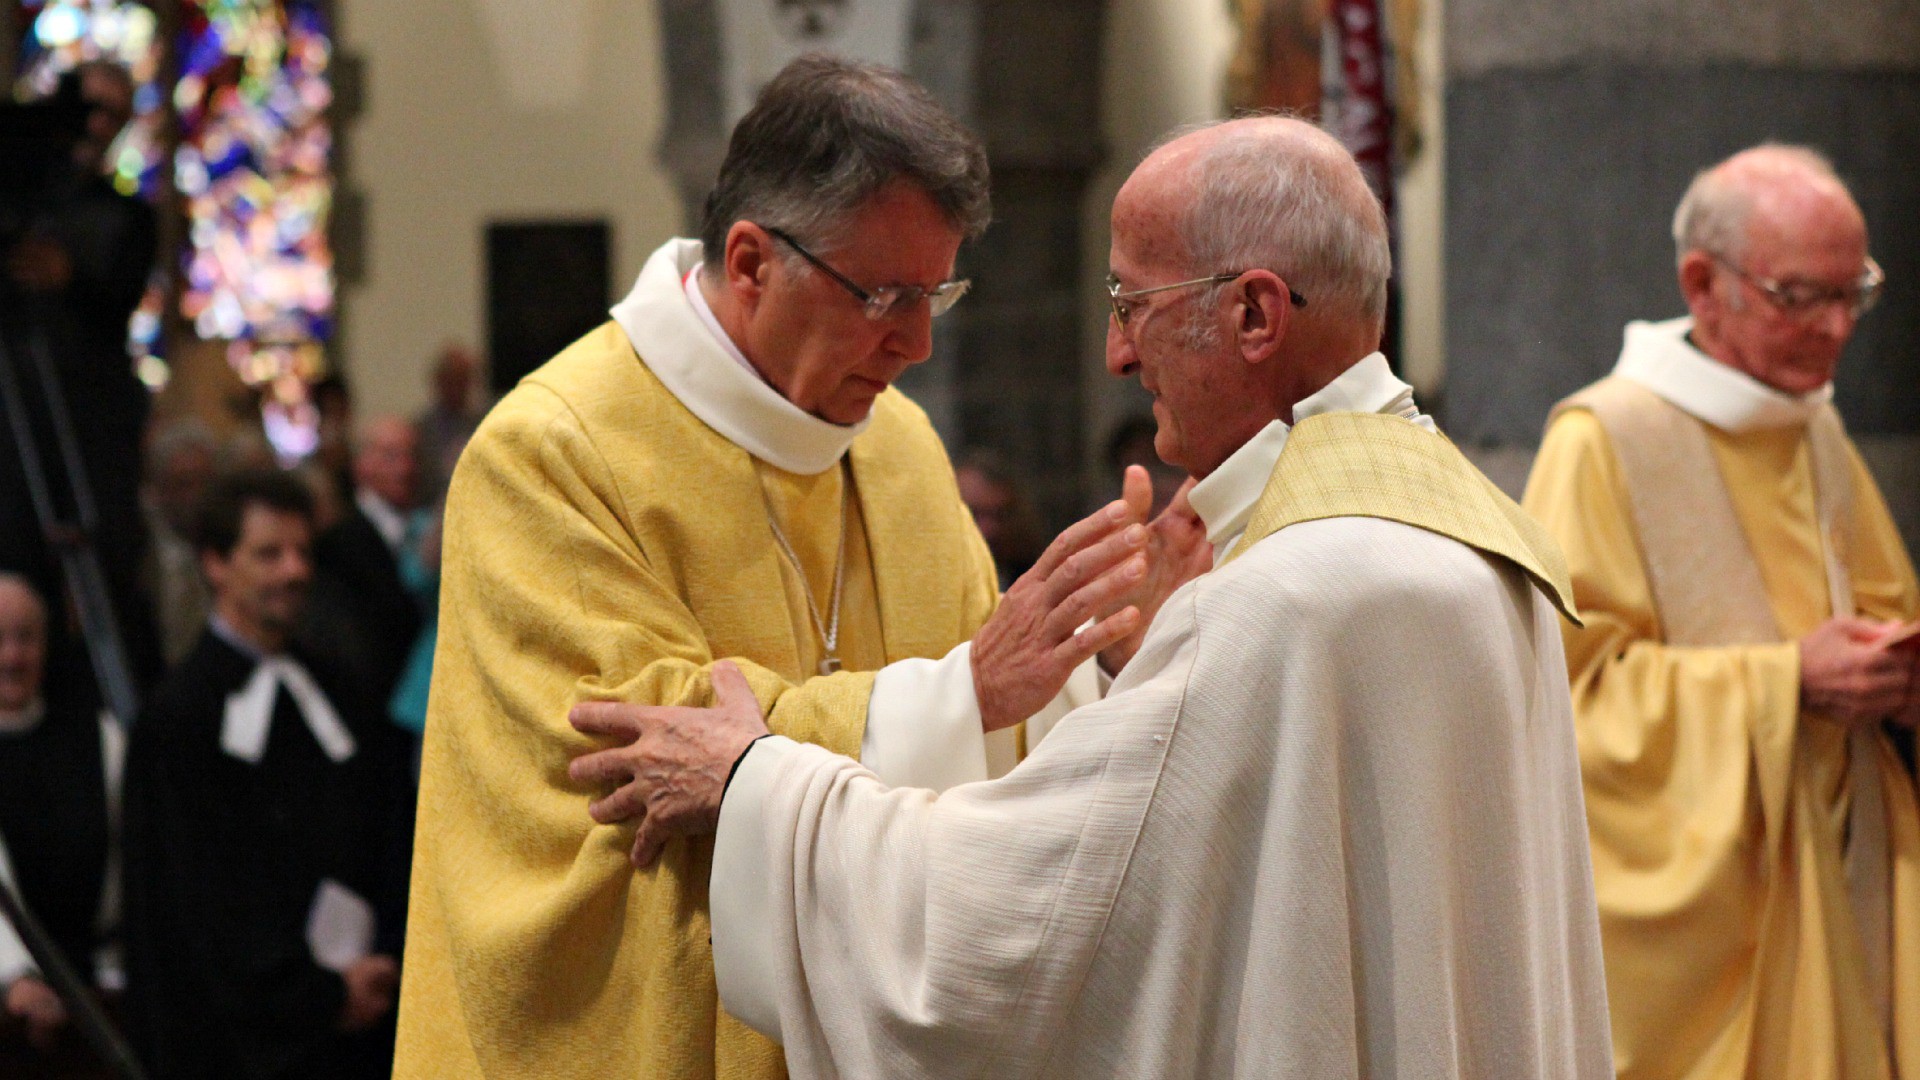 Le 1er août 2015, le jour de sa bénédiction abbatiale, Jean Scarcella reçoit l'accolade de Mgr Joseph Roduit. (Photo: B. Hallet)